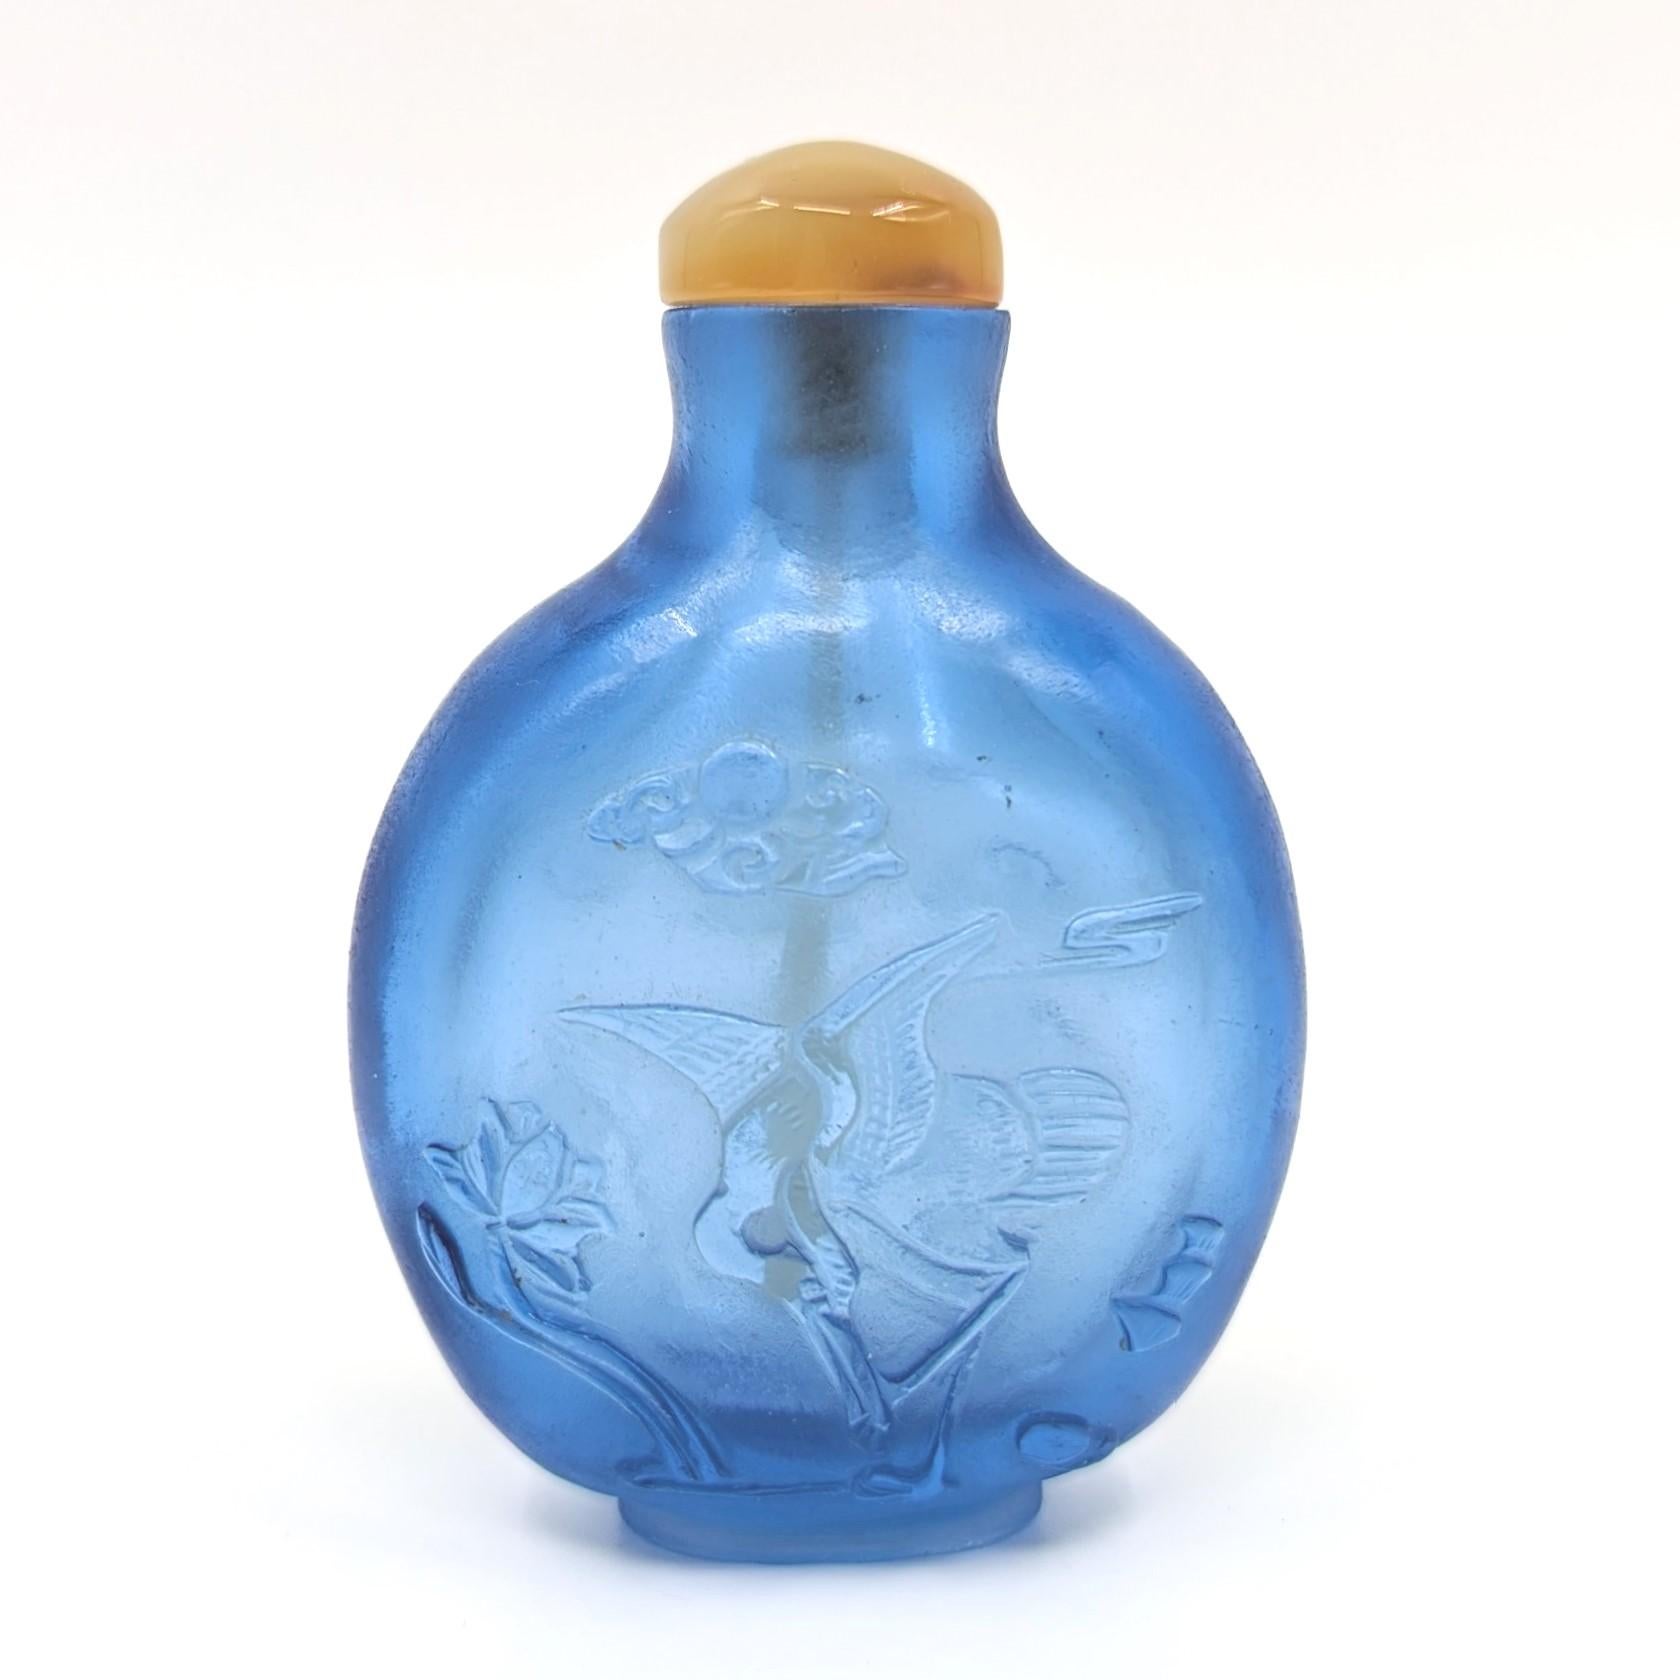 Antike chinesische Schnupftabakflasche aus kobaltblauem Glas, feines Relief mit fliegenden Kranichen zwischen Wolken auf der einen Seite und einem ruhenden Kranich zwischen Lotusblüten auf der anderen Seite, auf einem gut geschnitzten Fußring,